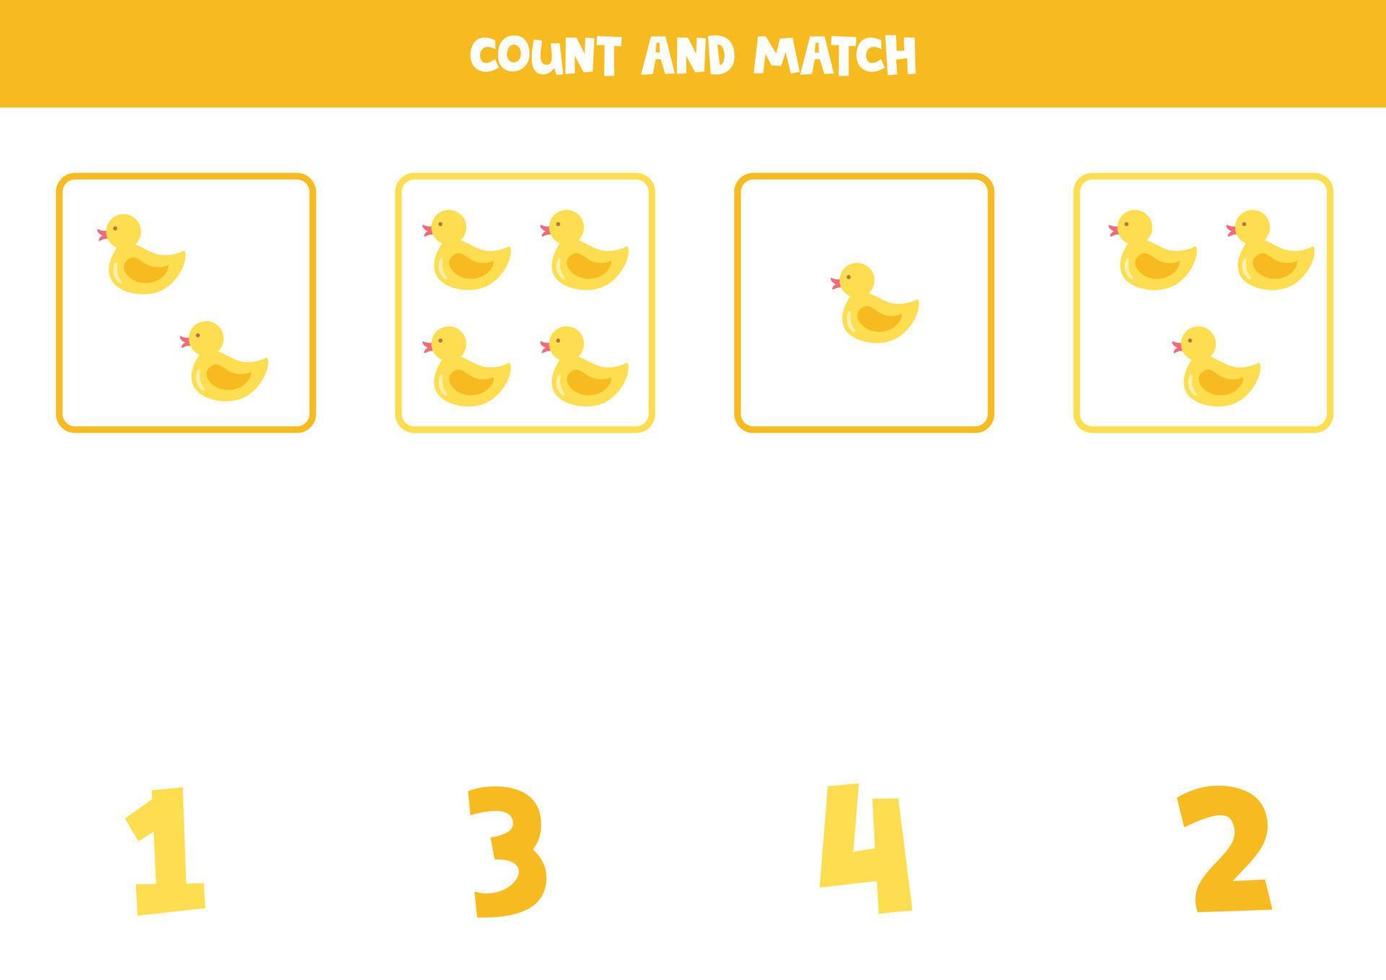 juego de conteo para niños. cuenta todos los patitos de goma y haz coincidir con los números. hoja de trabajo para niños. vector